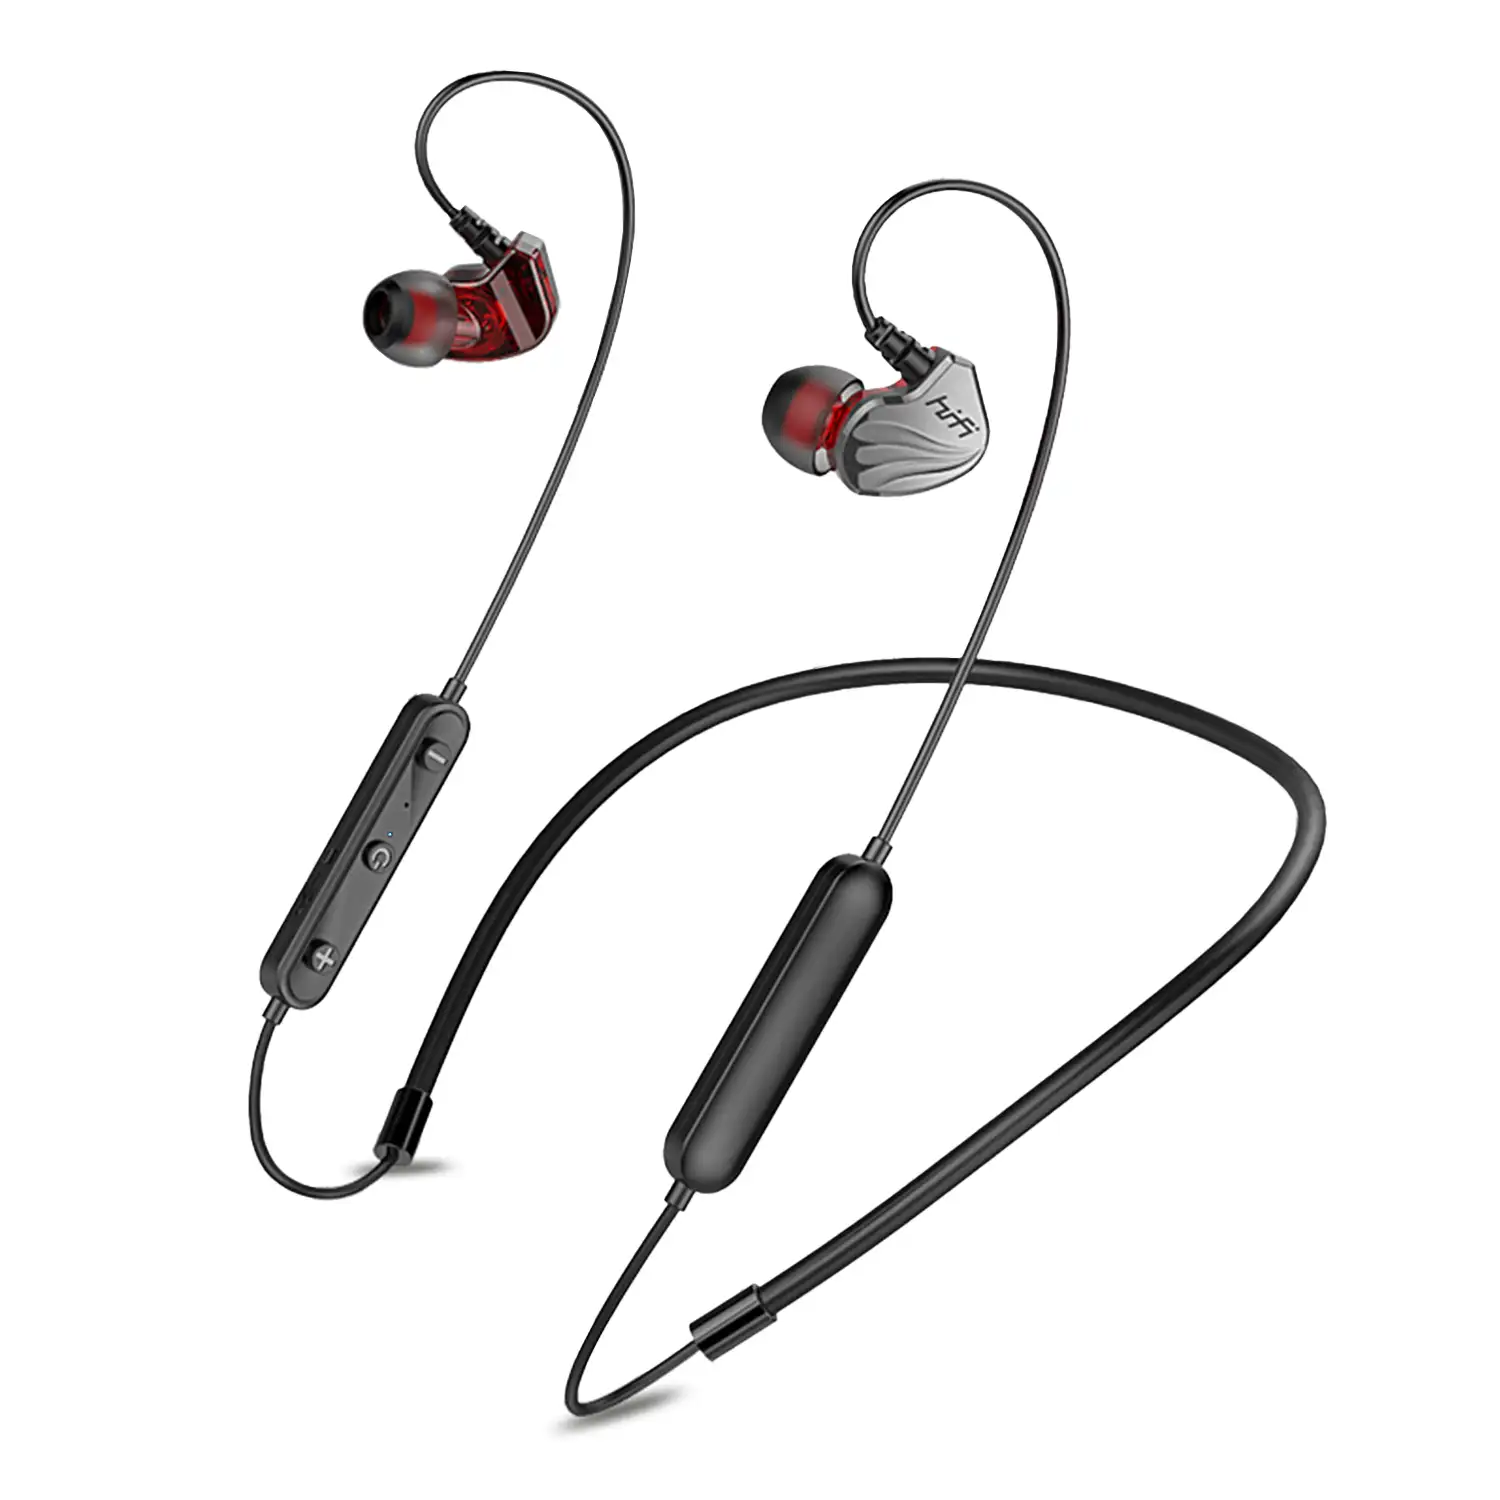 Auriculares in-ear H2000 HiFi Bluetooth 5.0. Batería de 120mAh, cable con control de reproducción y llamadas. Para colgar por detrás del cuello.